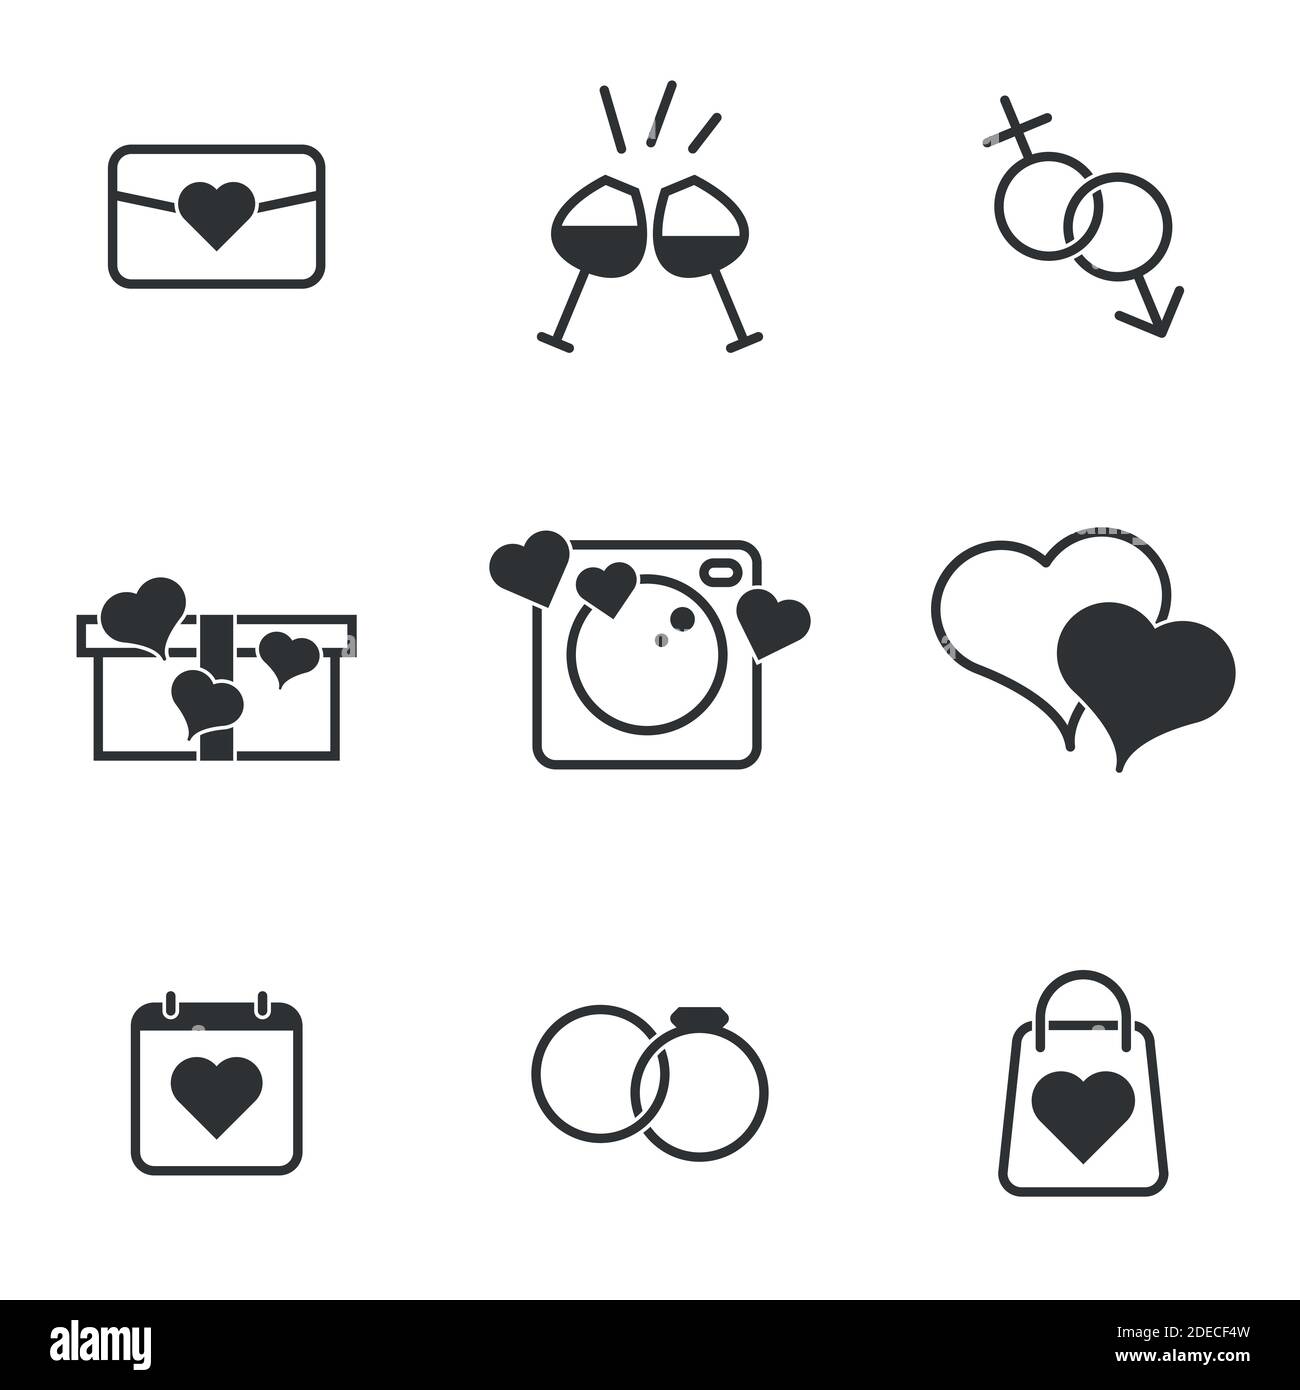 Set di icone vettoriali nere, isolate su sfondo bianco. Illustrazione piatta su un tema Amore Illustrazione Vettoriale